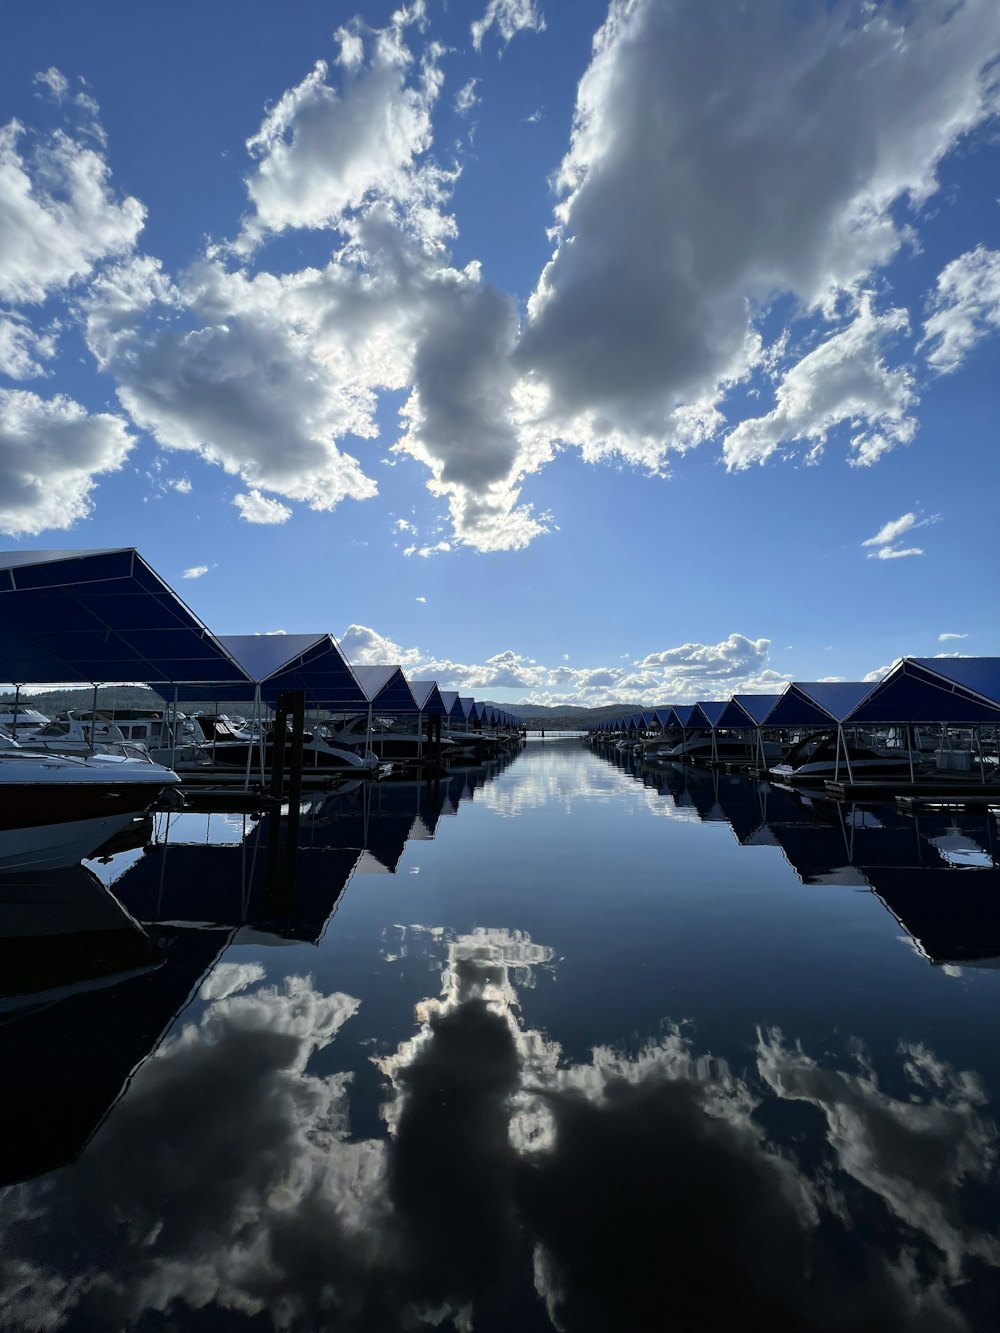 Un plan d’eau entouré de bateaux sous un ciel bleu nuageux